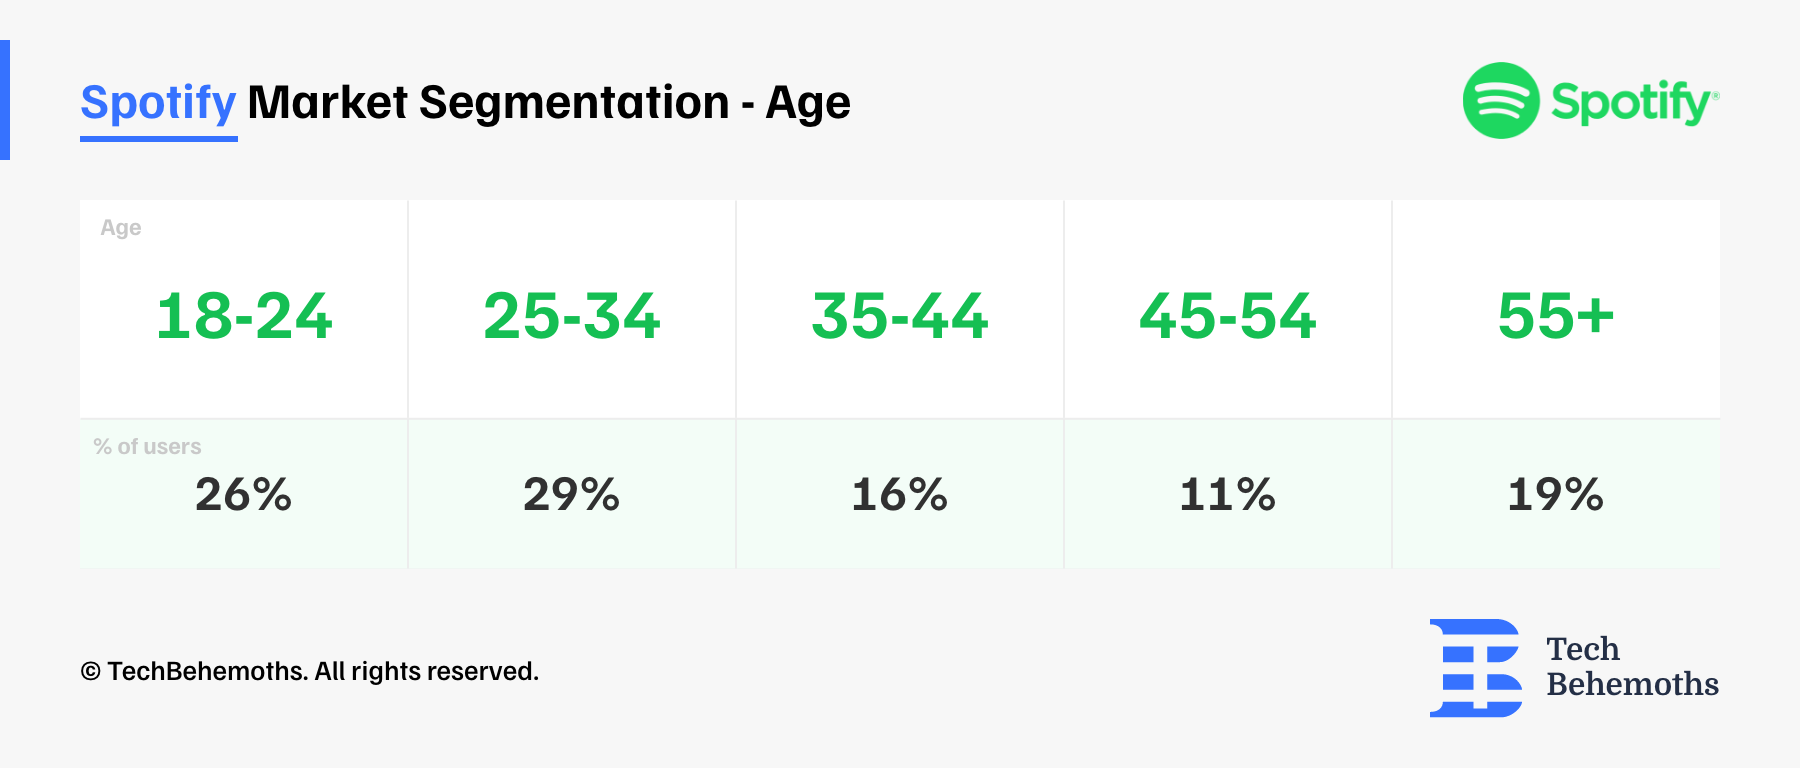 Spotify Market Segmentation - Age 